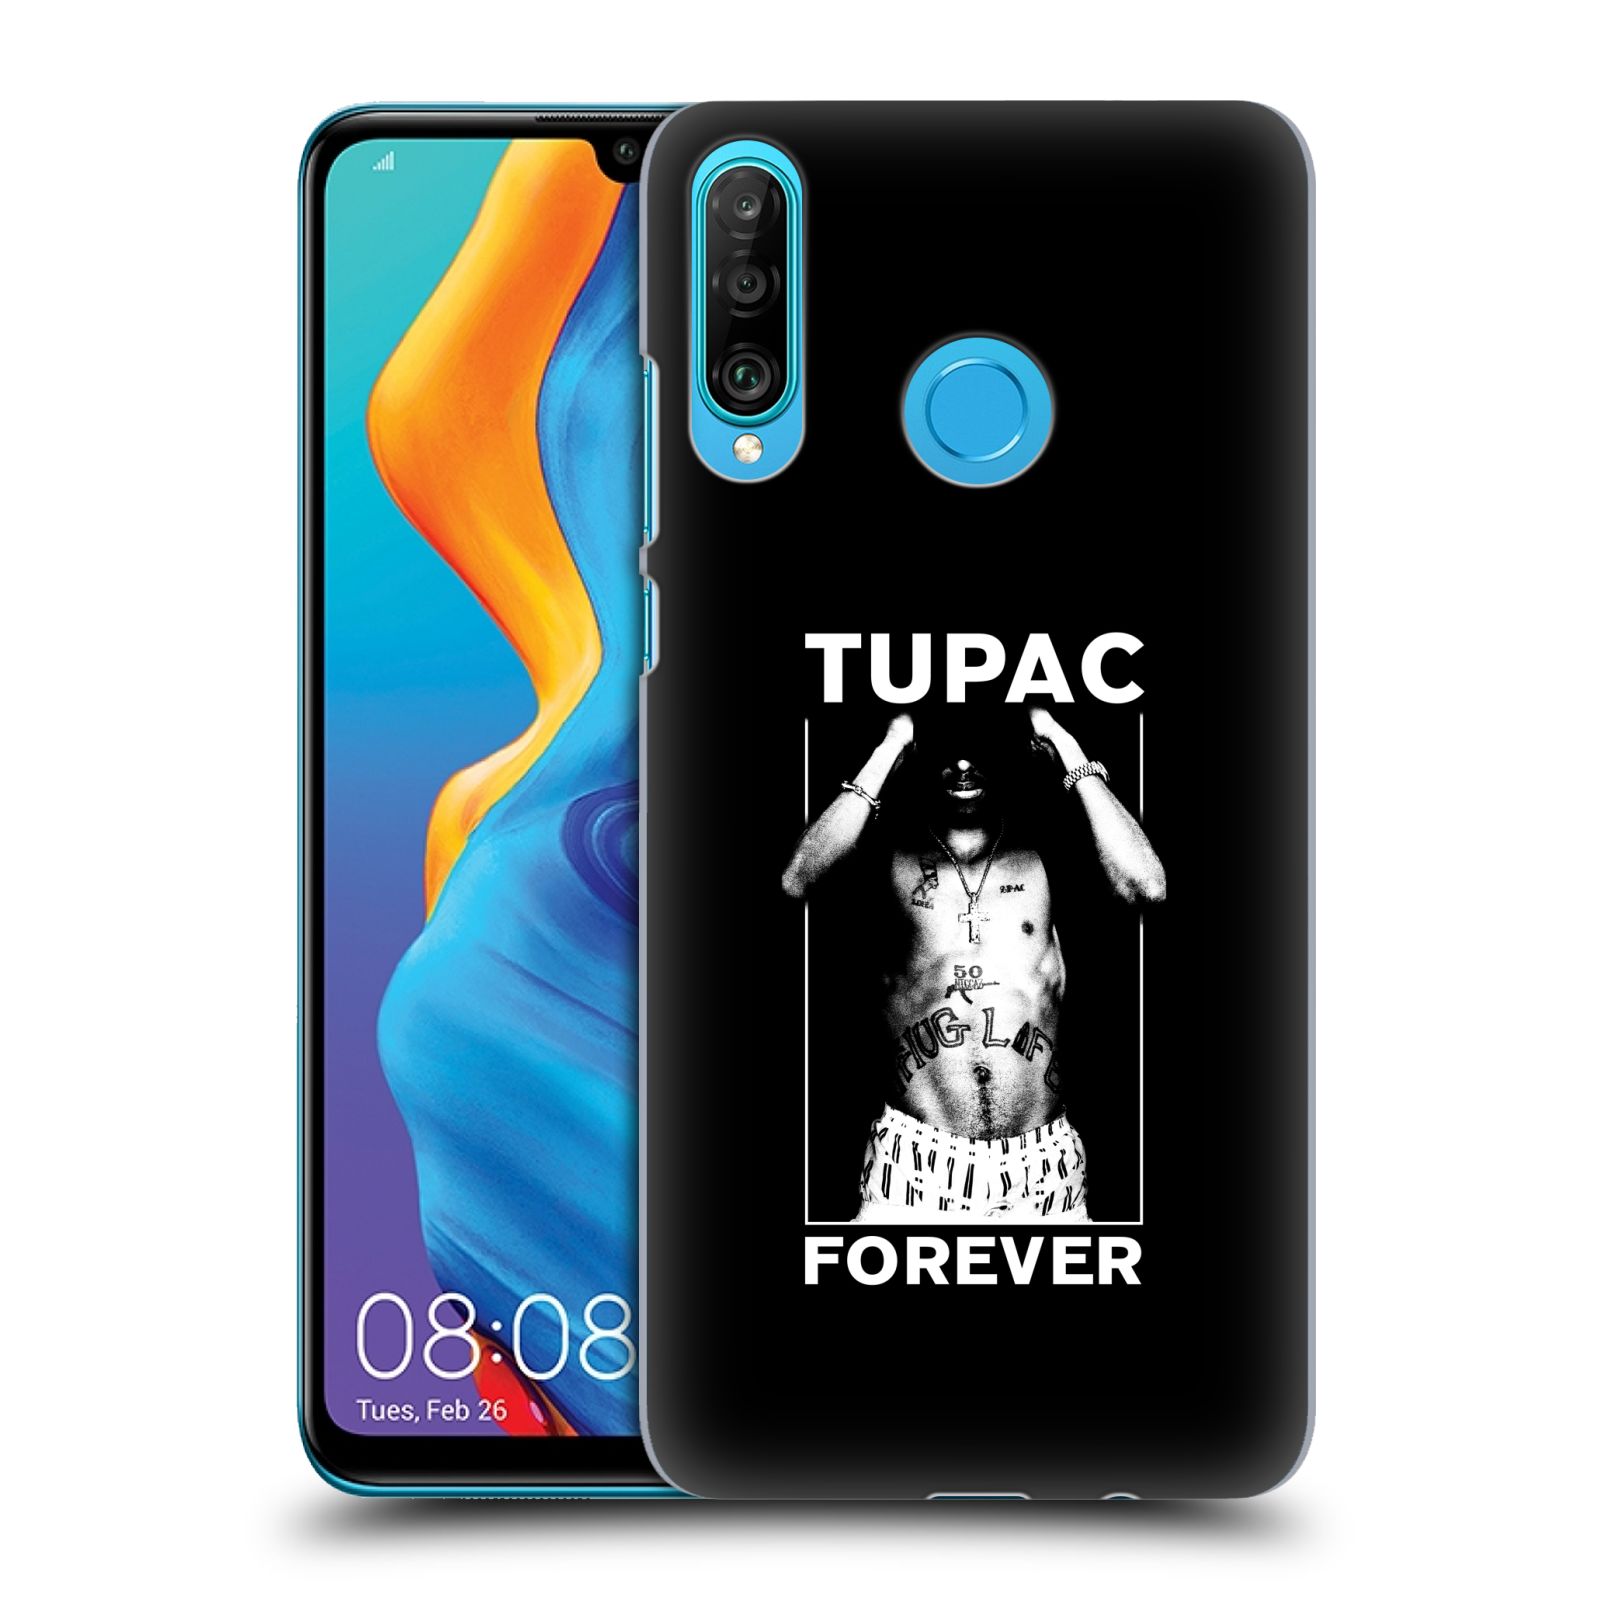 Pouzdro na mobil Huawei P30 LITE - HEAD CASE - Zpěvák rapper Tupac Shakur 2Pac bílý popisek FOREVER